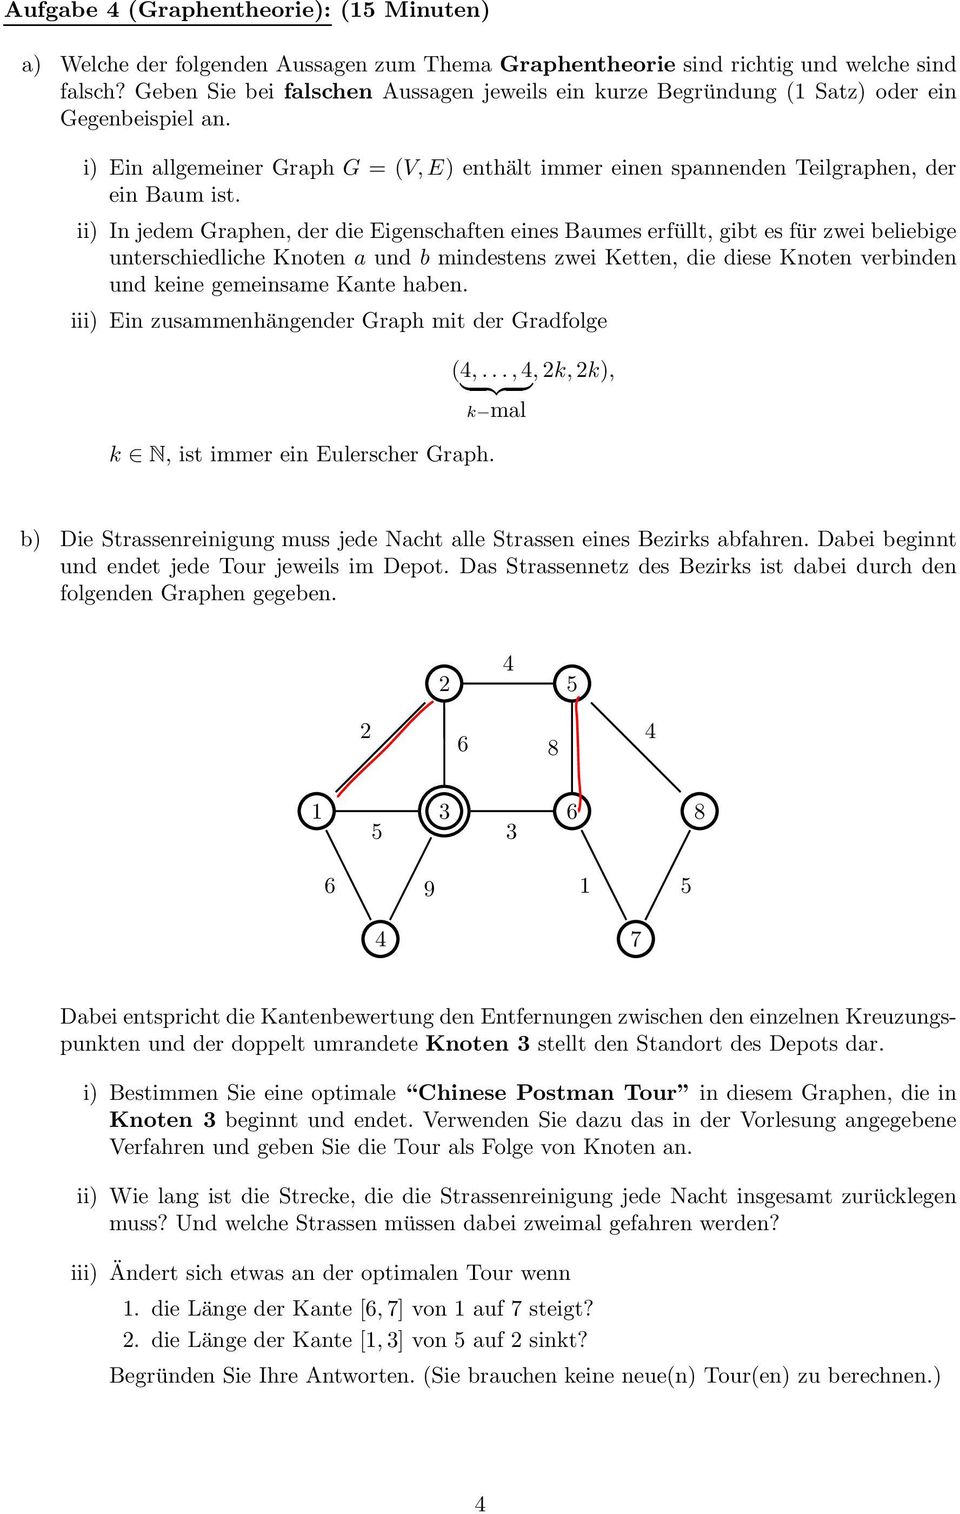 ii) In jedem Graphen, der die Eigenschaften eines Baumes erfüllt, gibt es für zwei beliebige unterschiedliche Knoten a und b mindestens zwei Ketten, die diese Knoten verbinden und keine gemeinsame